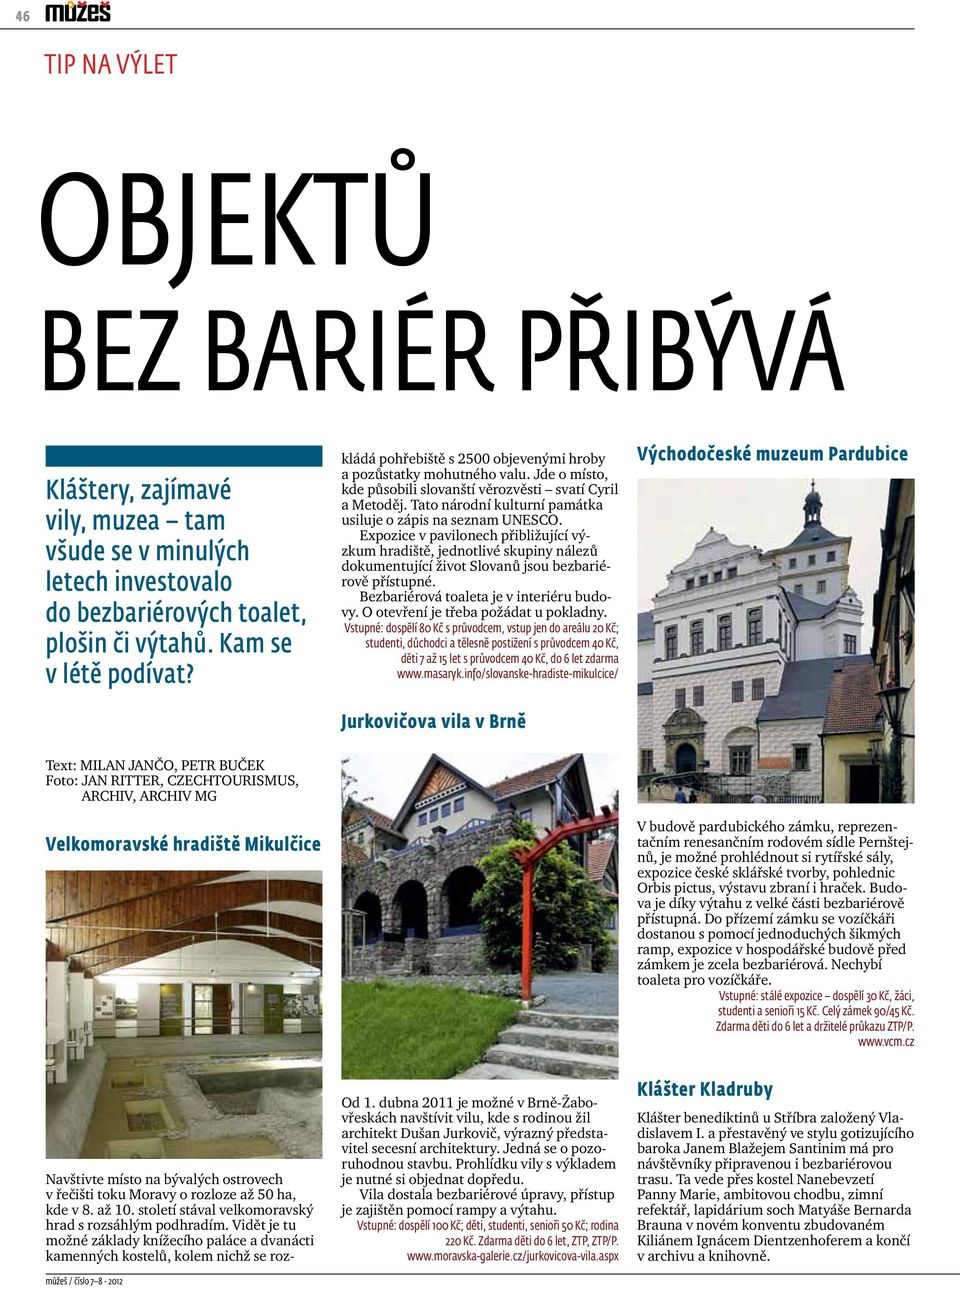 Tato národní kulturní památka usiluje o zápis na seznam UNESCO. Expozice v pavilonech přibližující výzkum hradiště, jednotlivé skupiny nálezů dokumentující život Slovanů jsou bezbariérově přístupné.